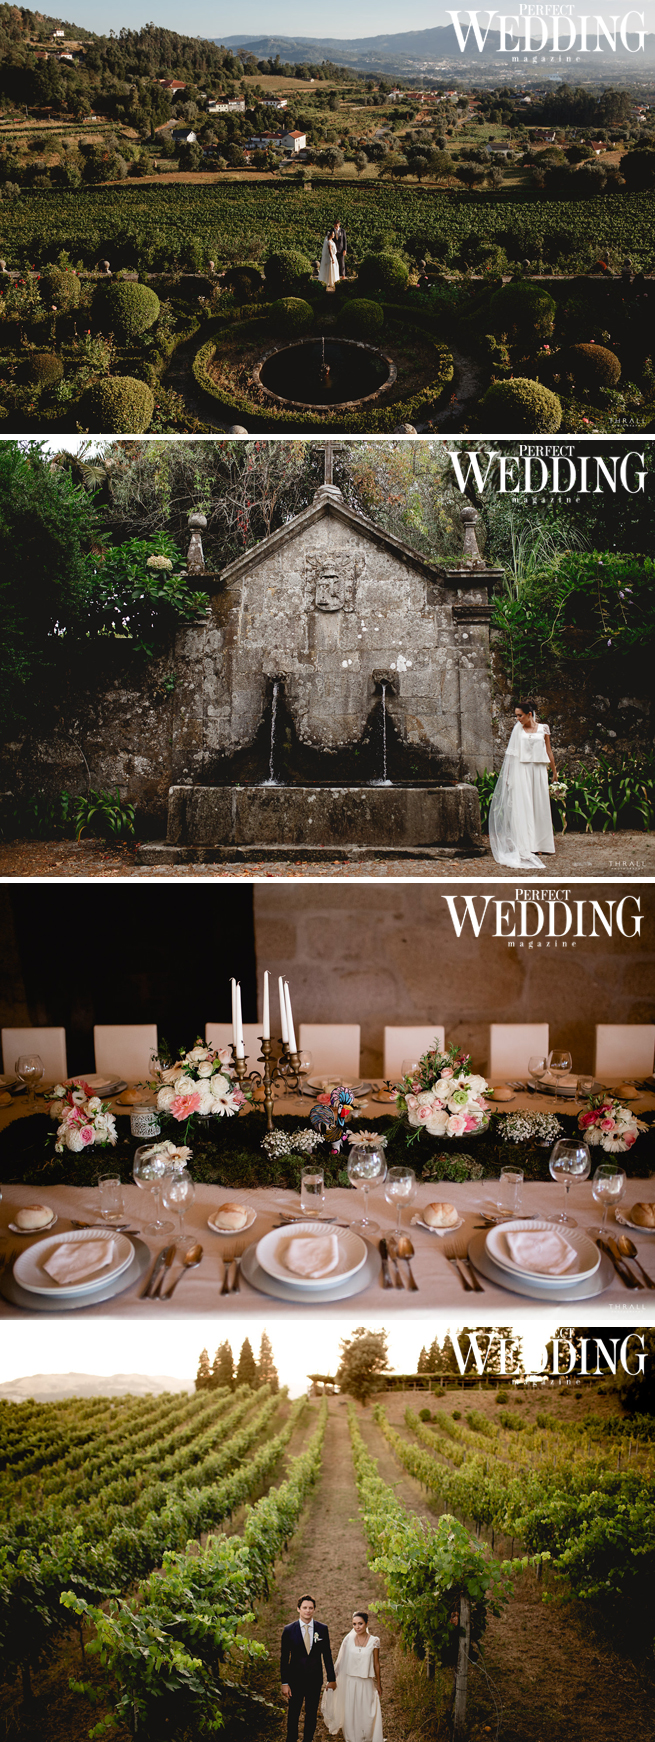 Belief Wedding Planners, Belief Awards, Perfect Wedding Magazine, Perfect wedding Blog, Wedding Decor, Destination Wedding